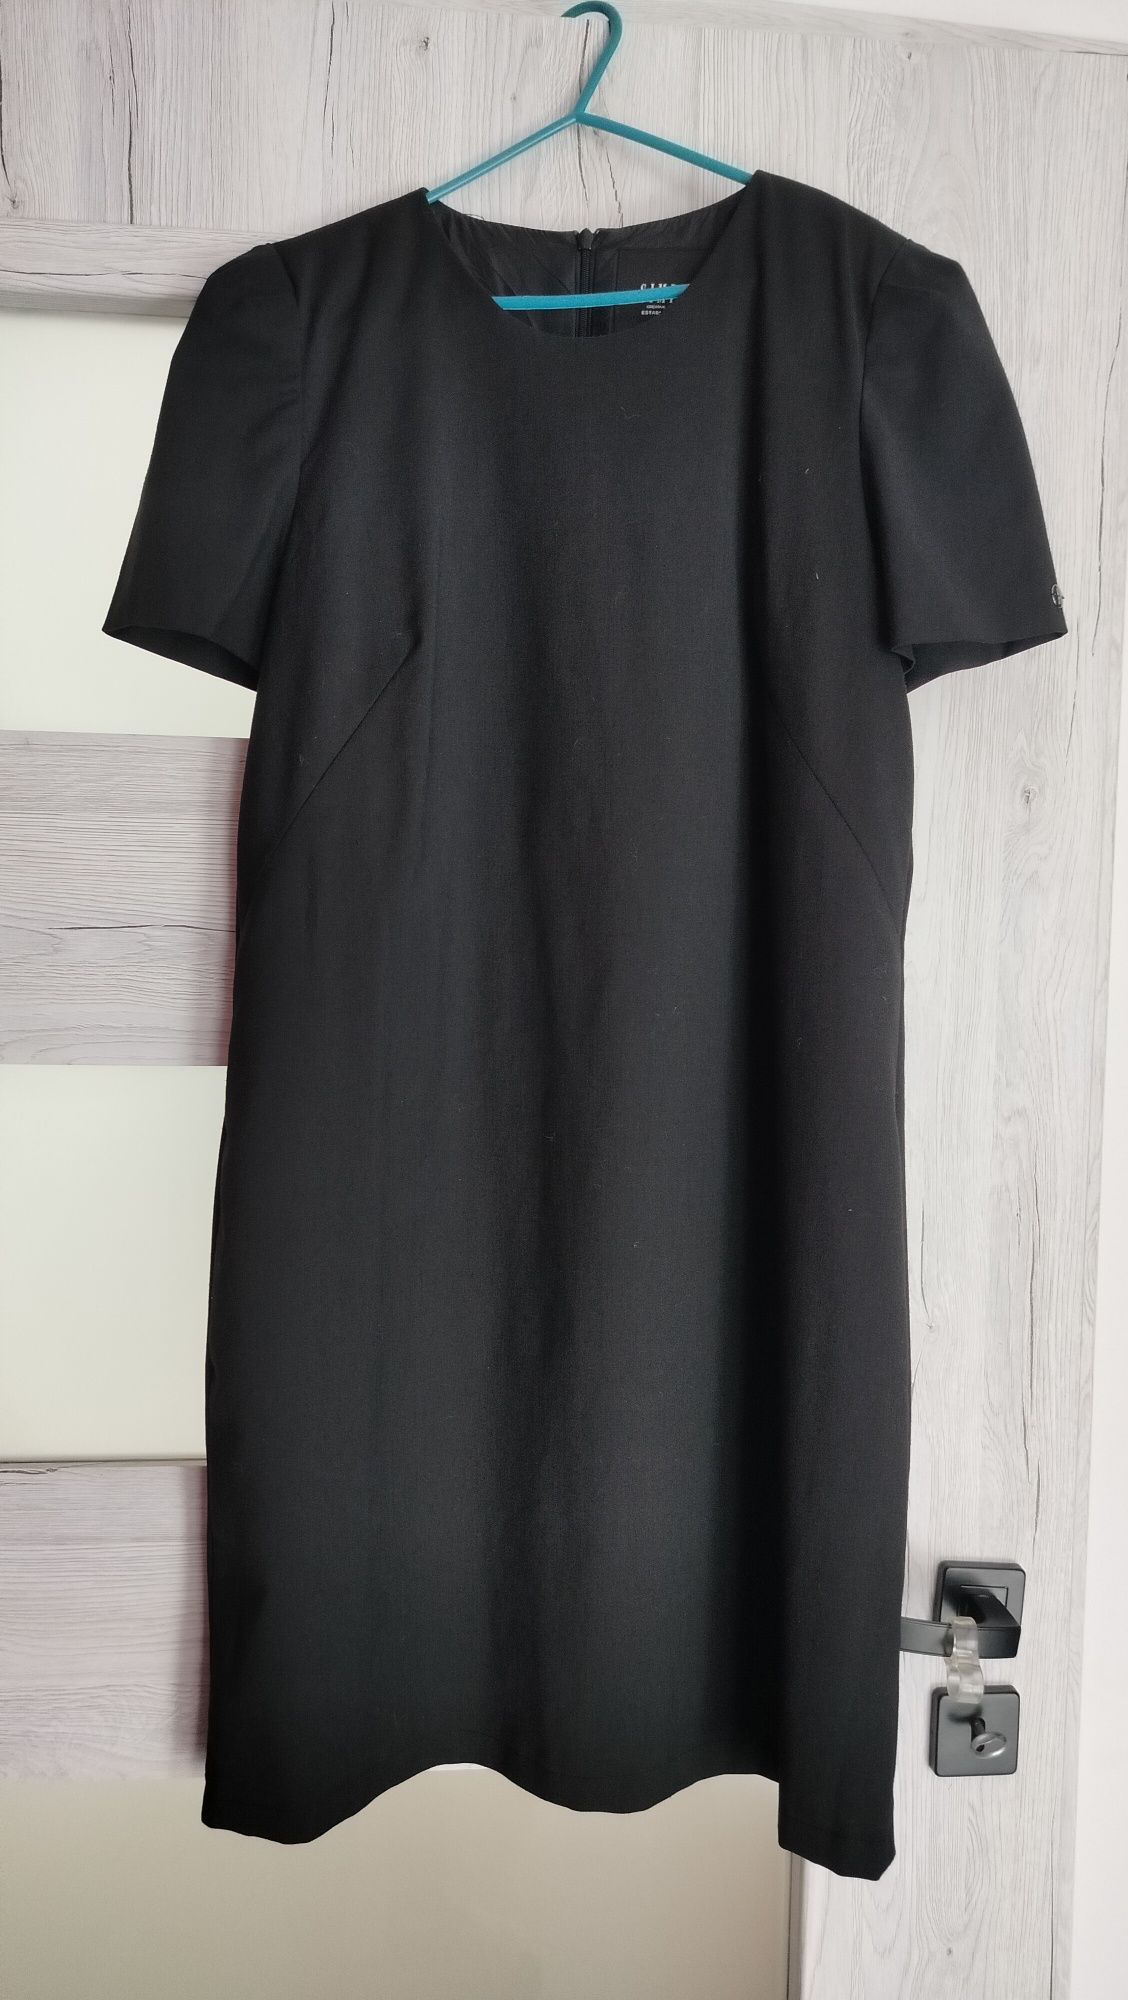 Sukienka mała czarna - wizytowa suknia w czarnym kolorze